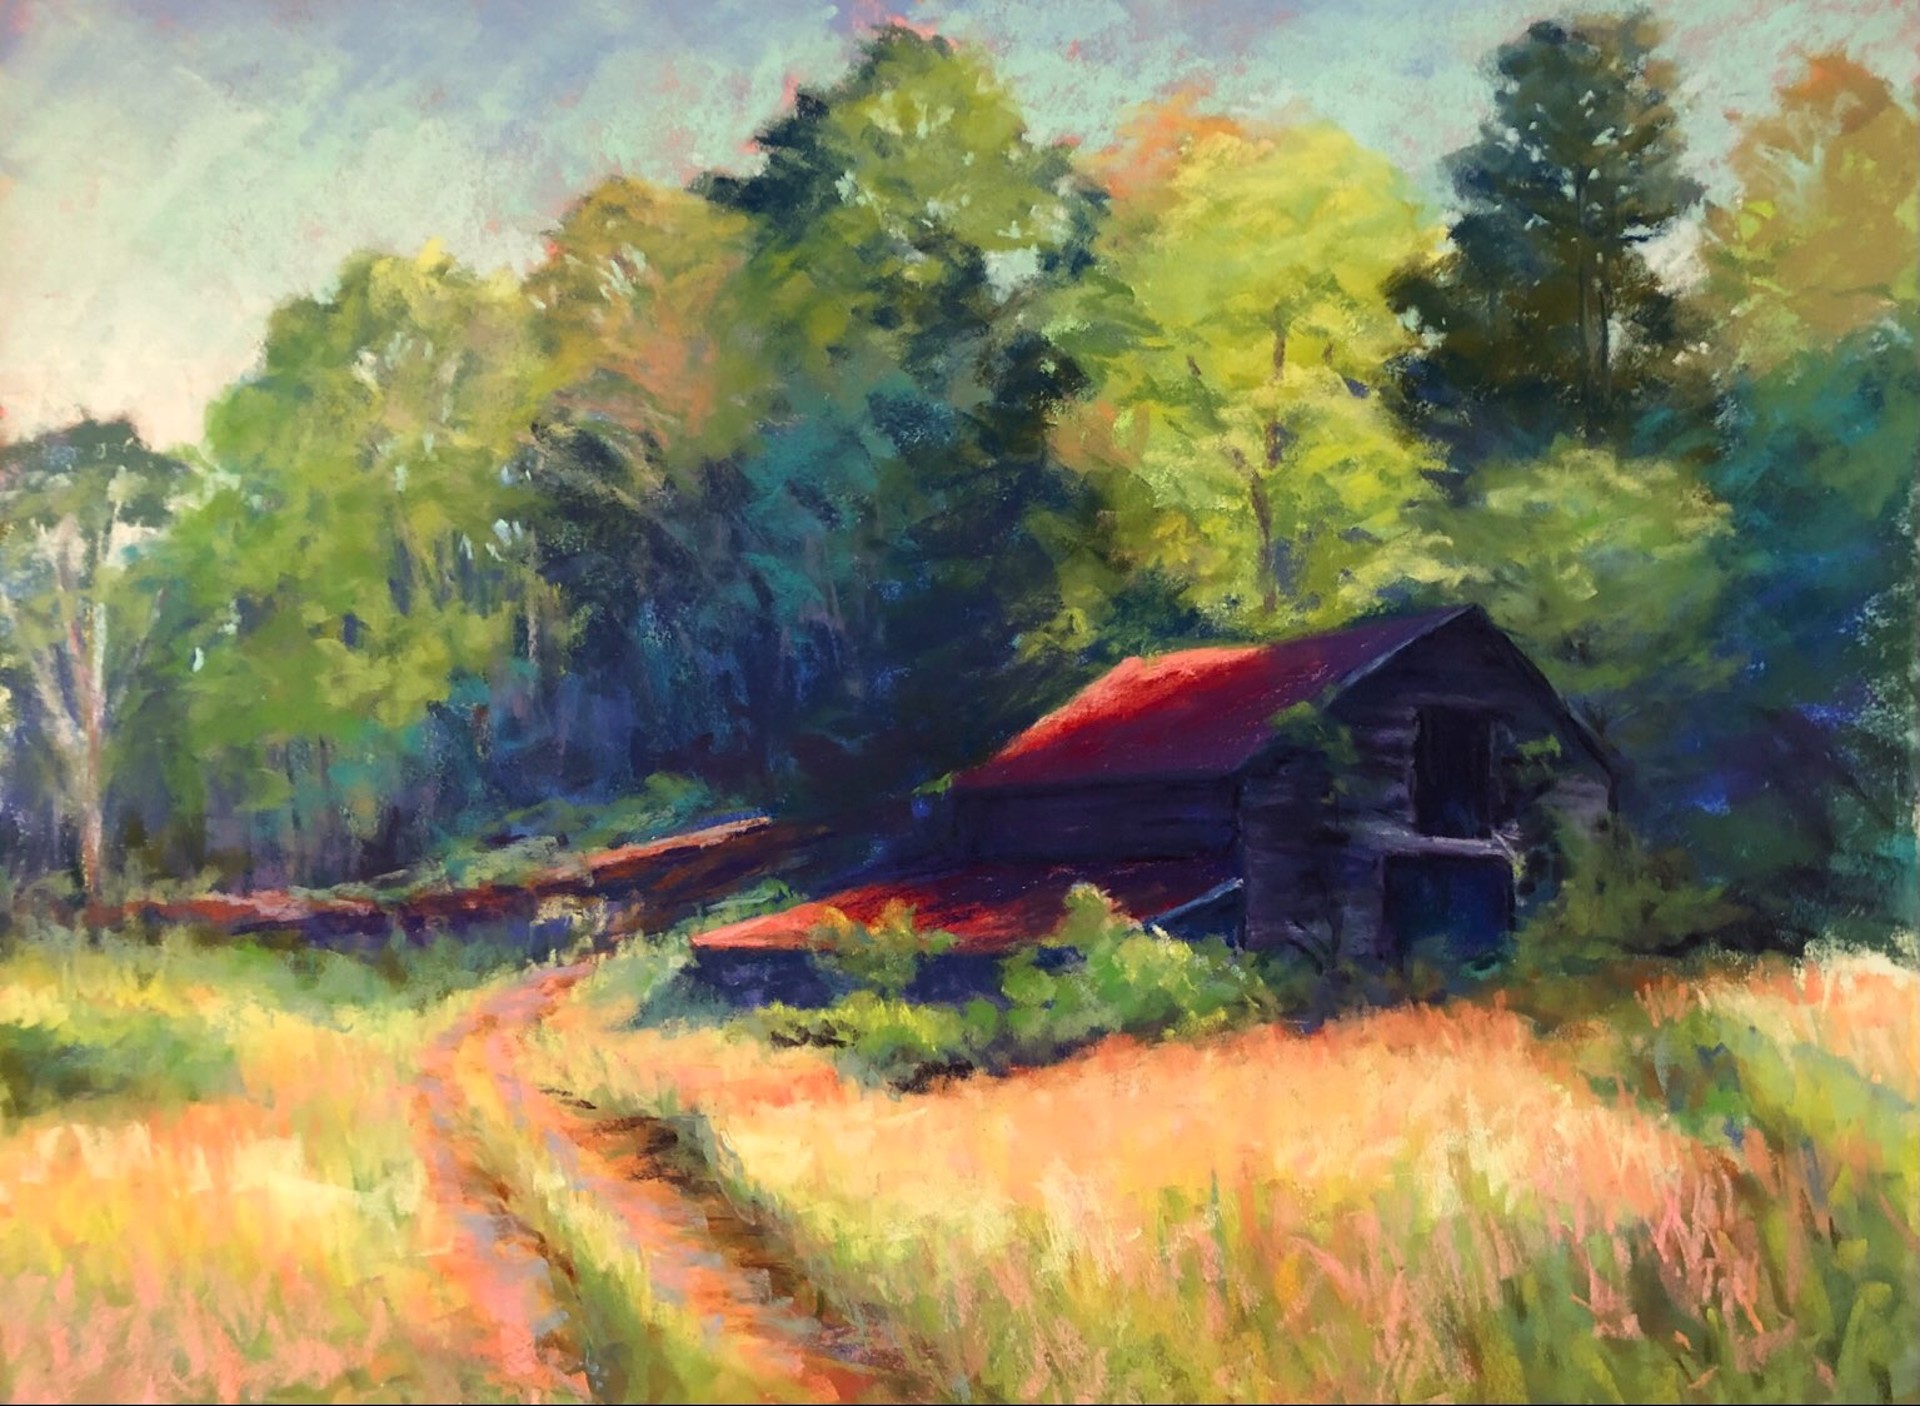 Old Toccoa Barn by Marsha Hamby Savage